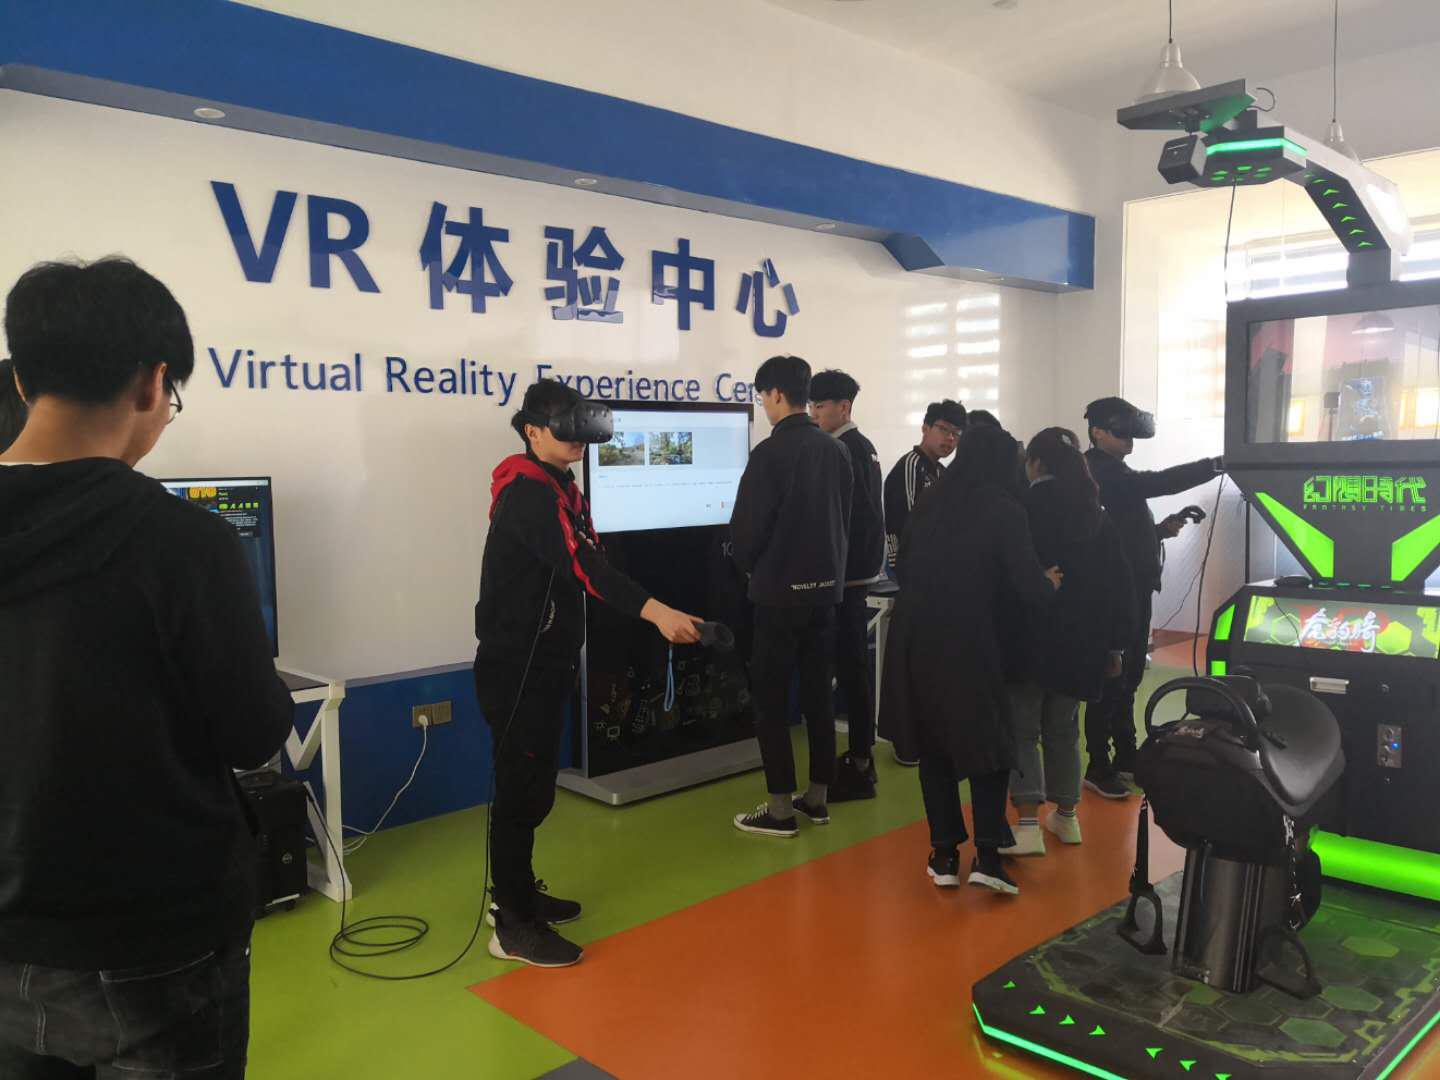 VR虚拟现实体验中心.jpg